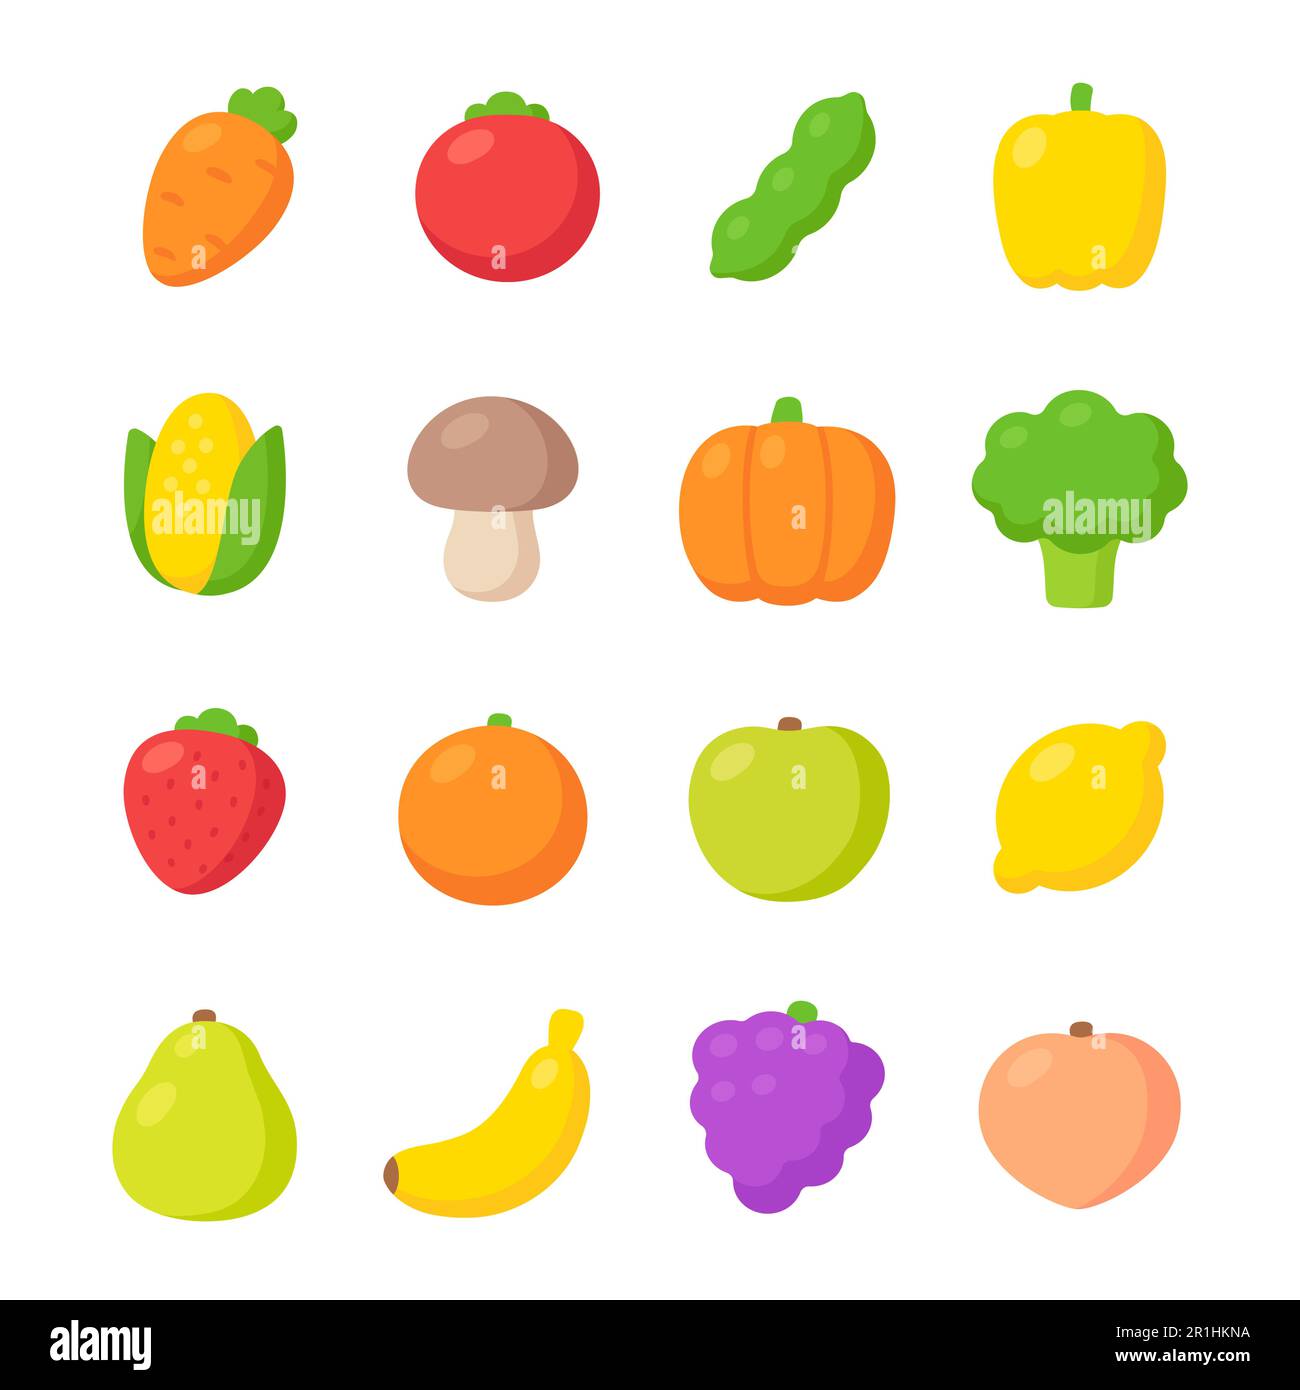 Handgezeichnete Obst- und Gemüsemerkmale in einem Cartoon. Niedliche und schlichte bunte Designs, Vektorbildungs-Set. Flacher, linienloser Stil. Stock Vektor